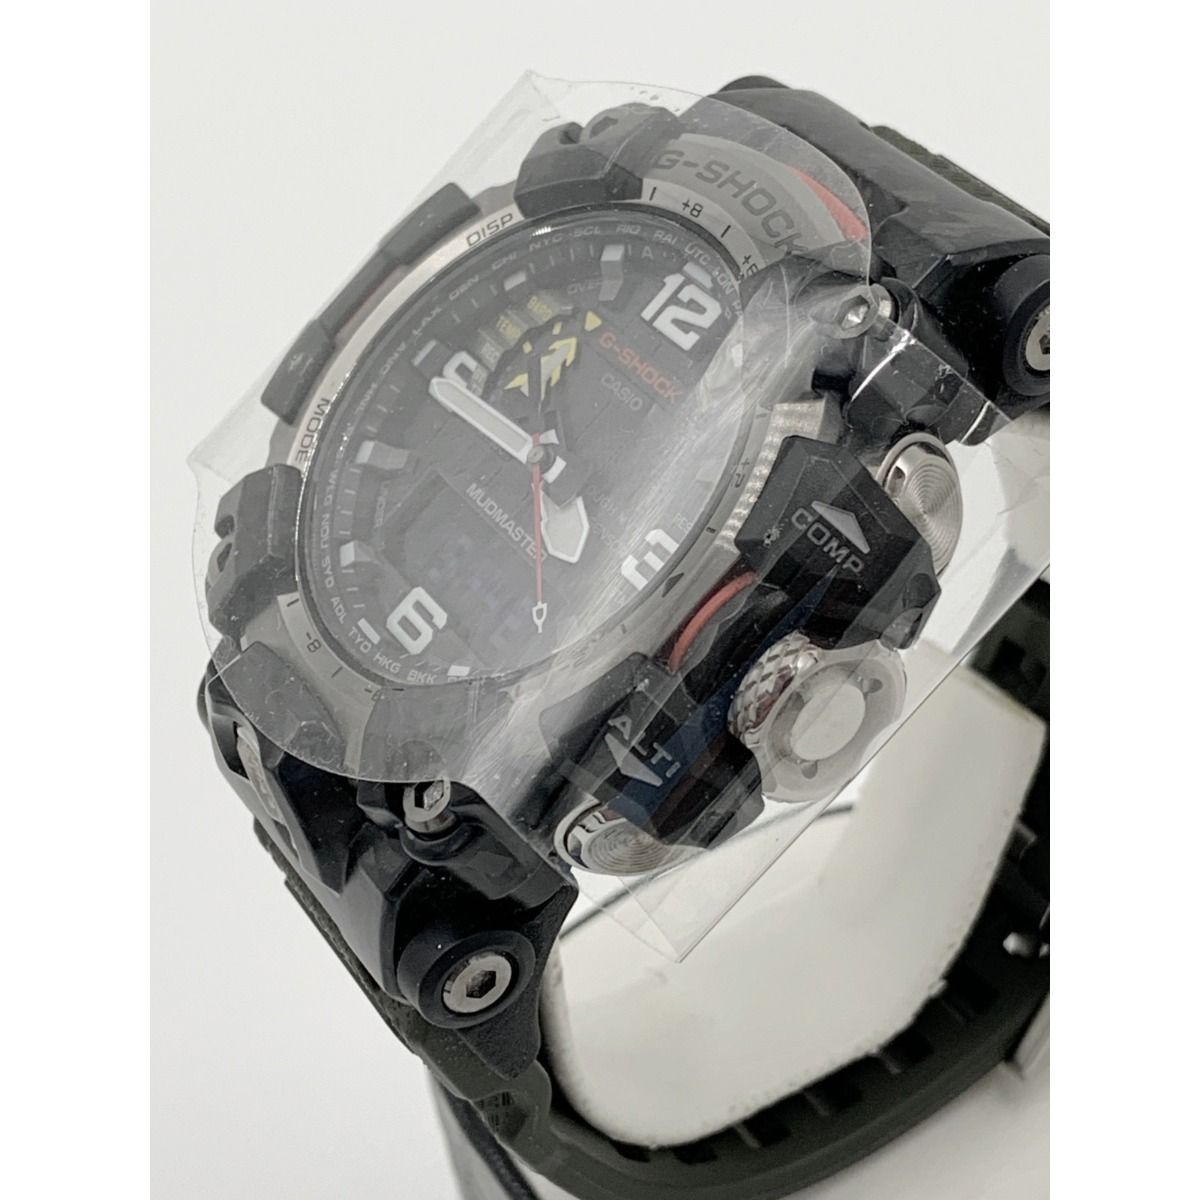 〇〇CASIO カシオ G-SHOCK Gショック マッドマスター ソーラー電波クォーツ 腕時計 GWG-2000 ブラック